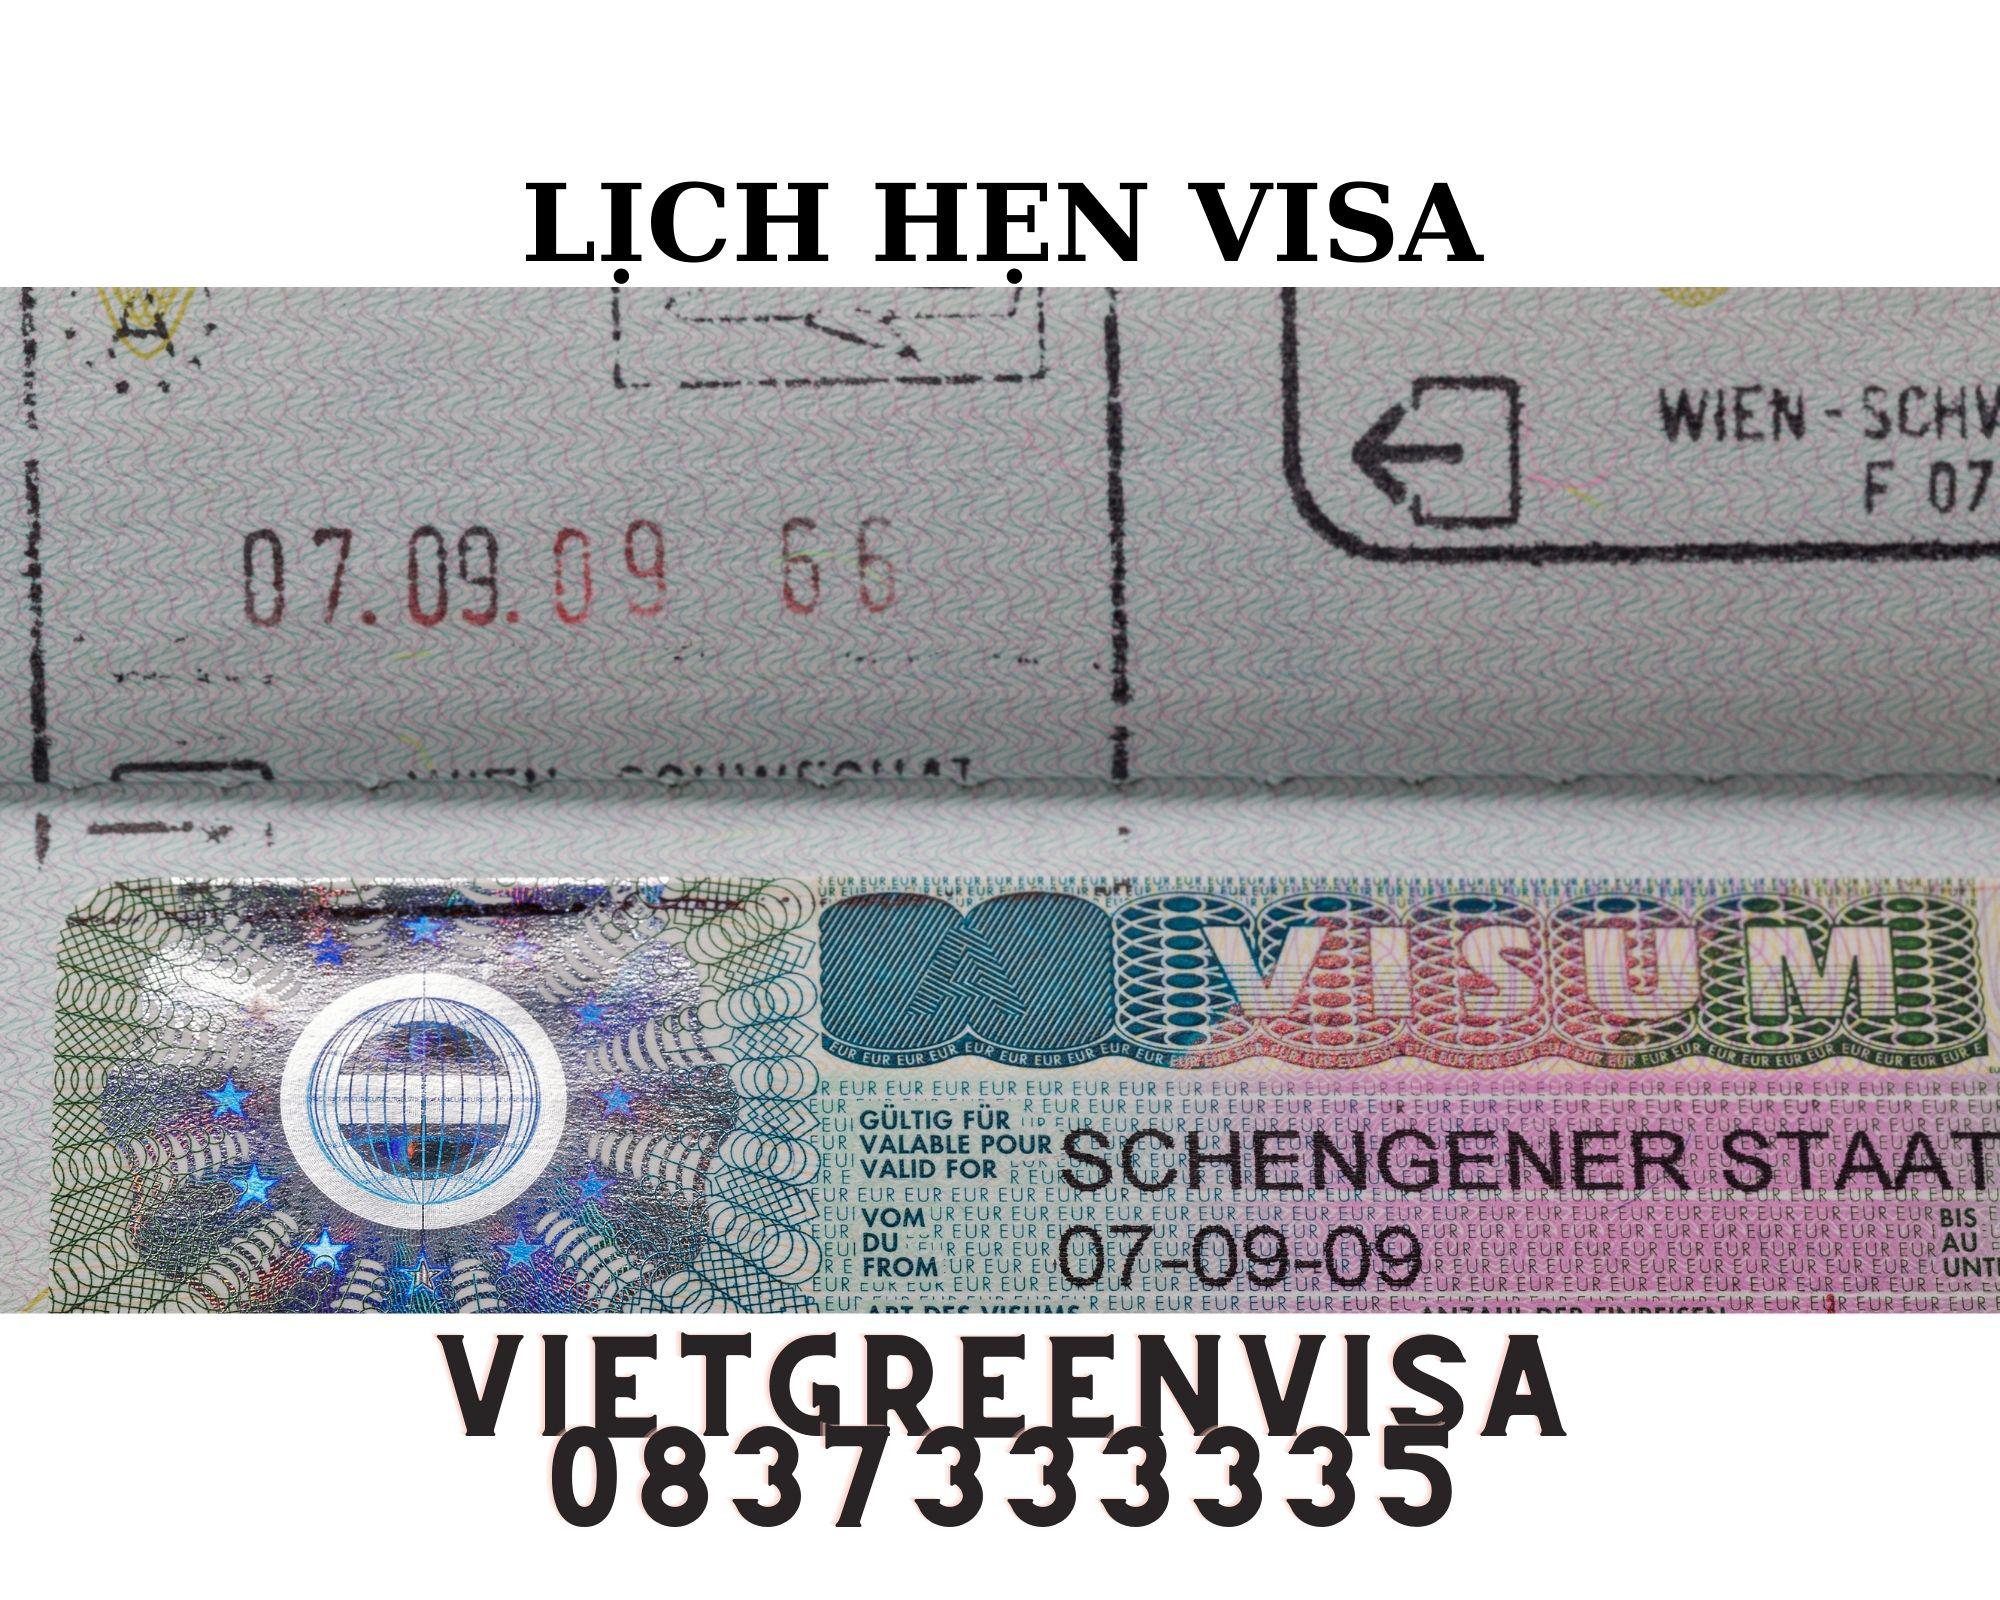 Dịch vụ đặt lịch hẹn phỏng visa visa Áo